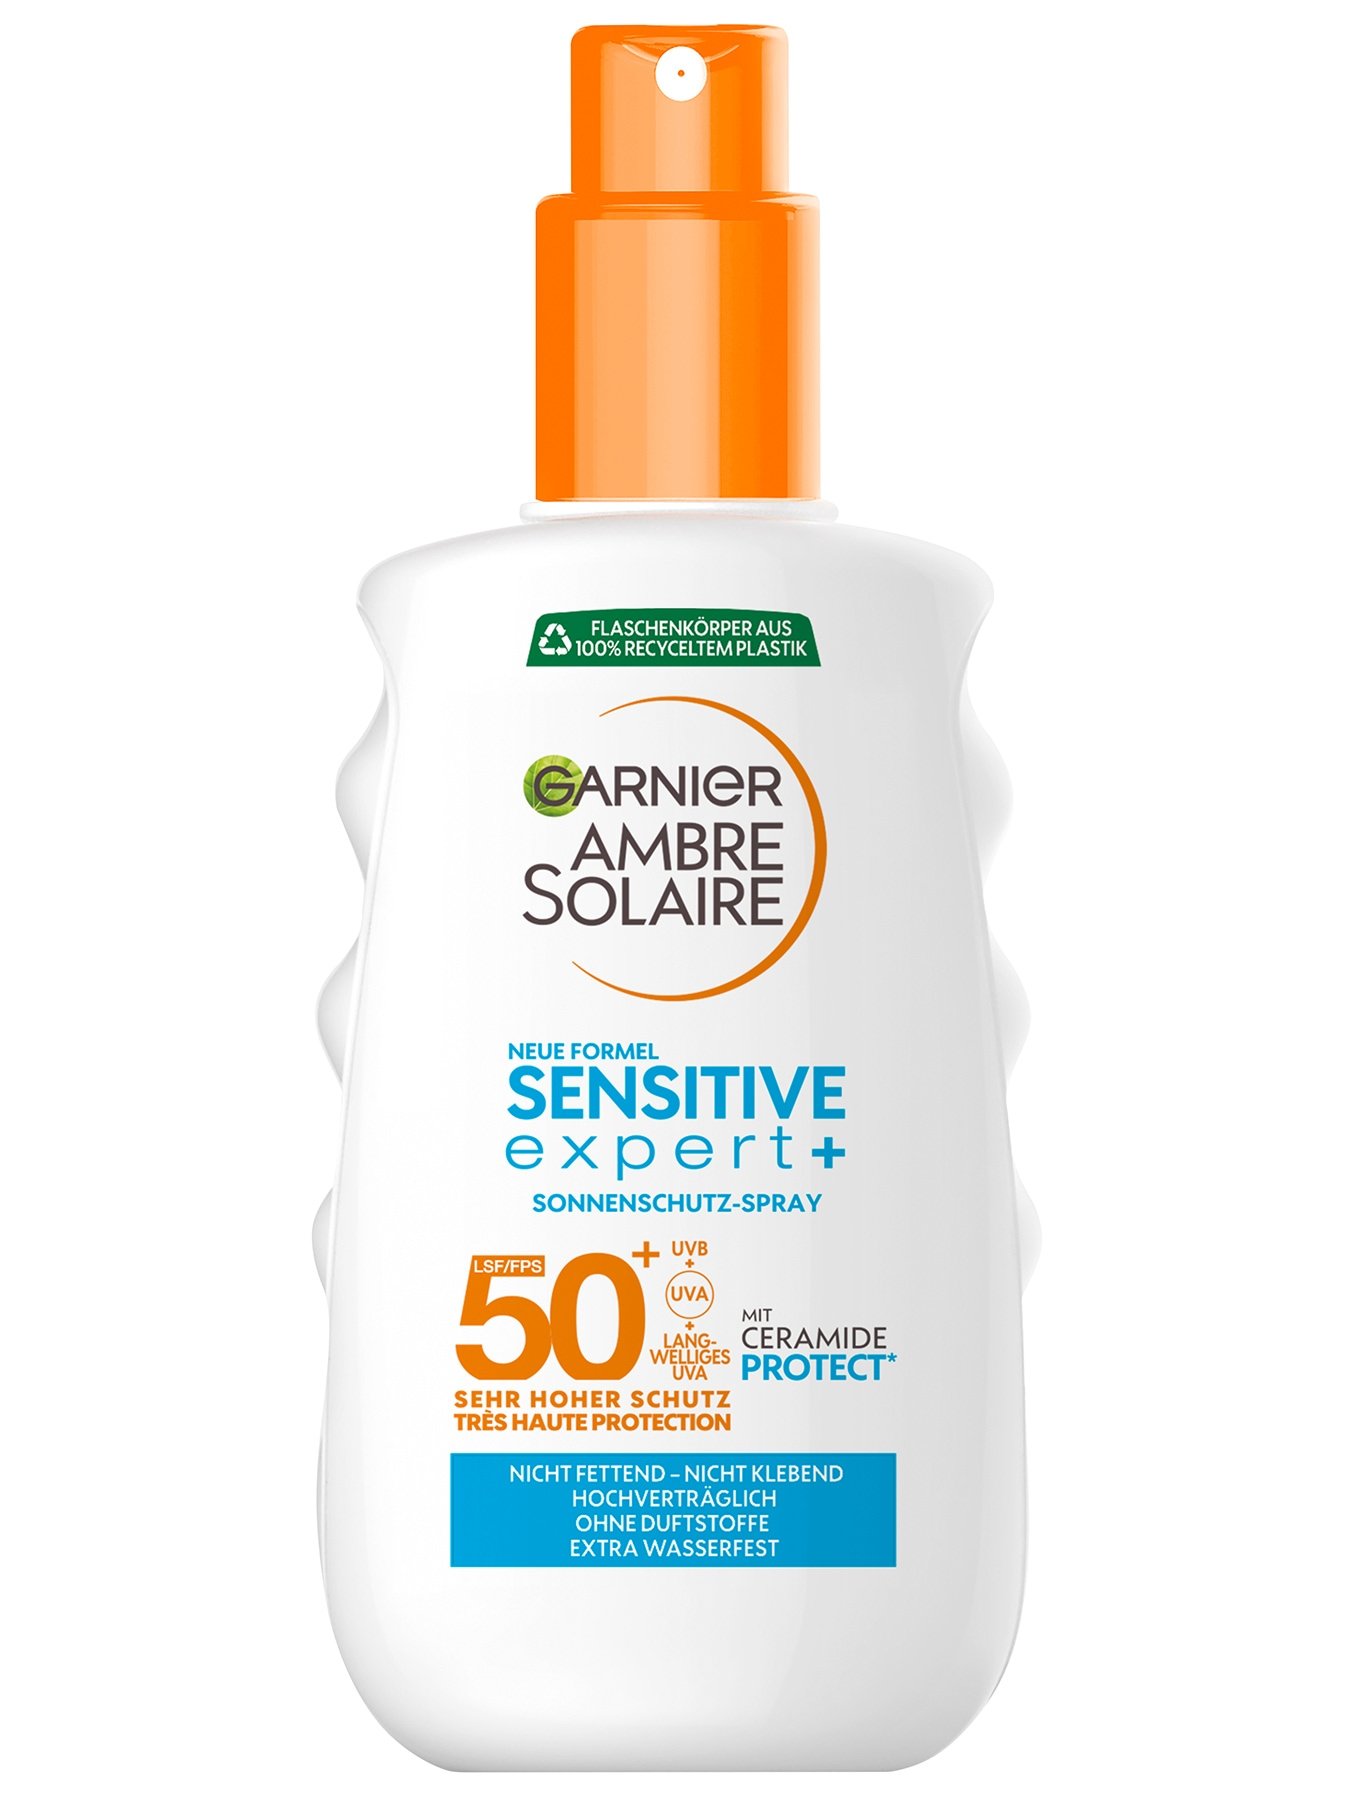  Sensitive expert+ Sonnenschutz-Spray LSF 50+ - Produktabbildung